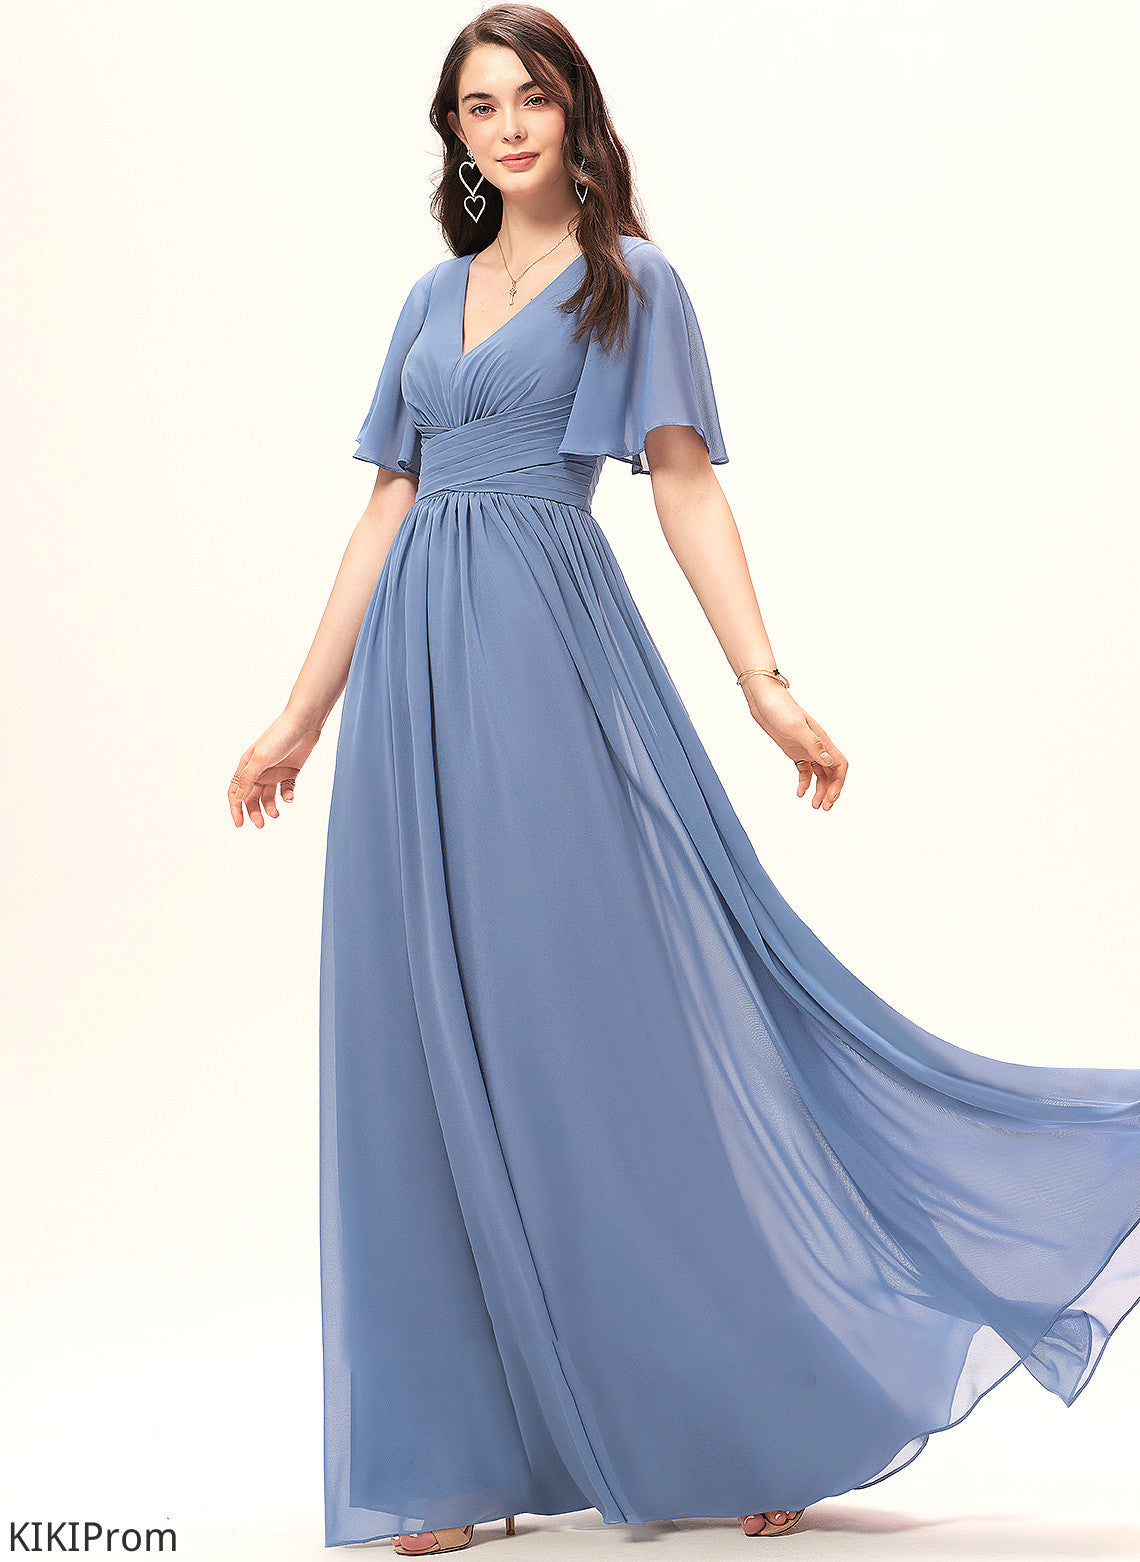 V-neck Ruffle Neckline Fabric Length Silhouette Floor-Length Embellishment A-Line Dakota V-Neck Floor Length Bridesmaid Dresses